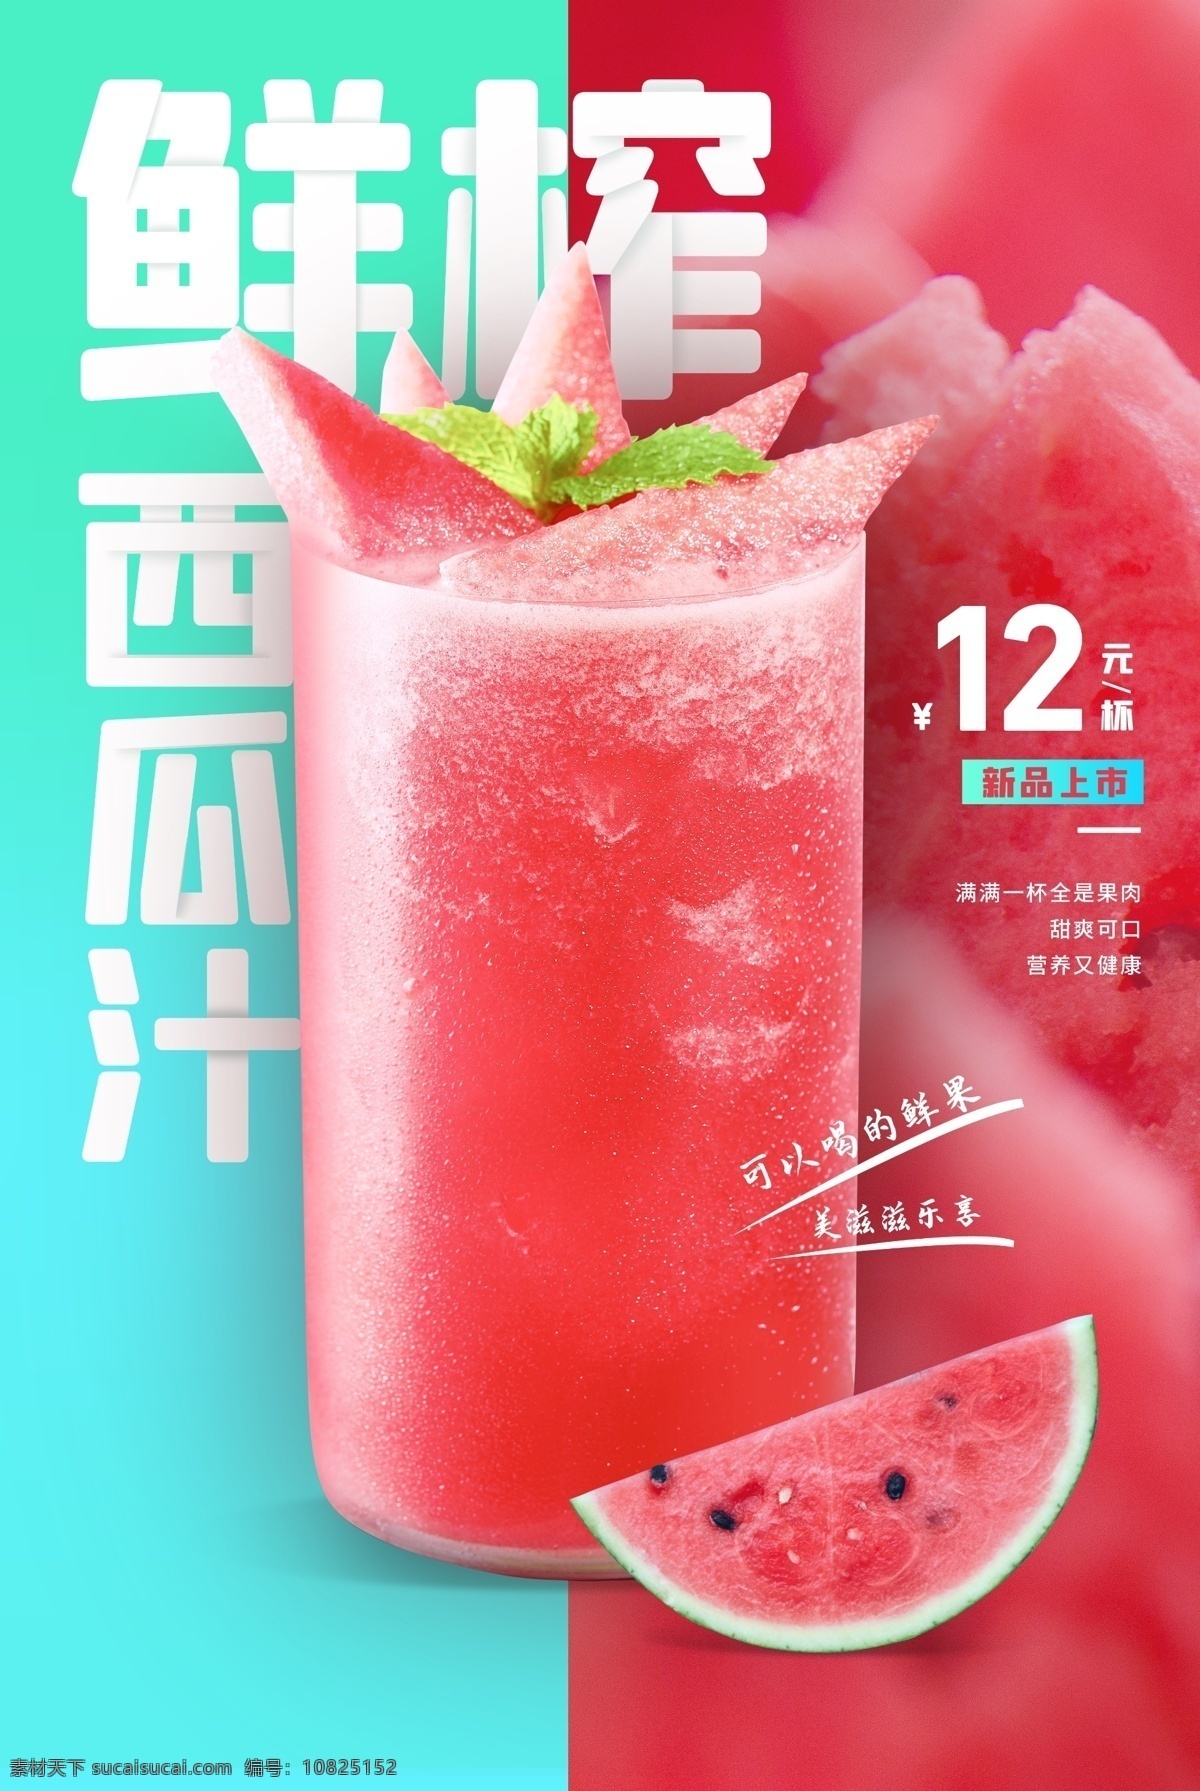 西瓜汁 饮品 活动 宣传海报 宣传 海报 饮料 甜品 类